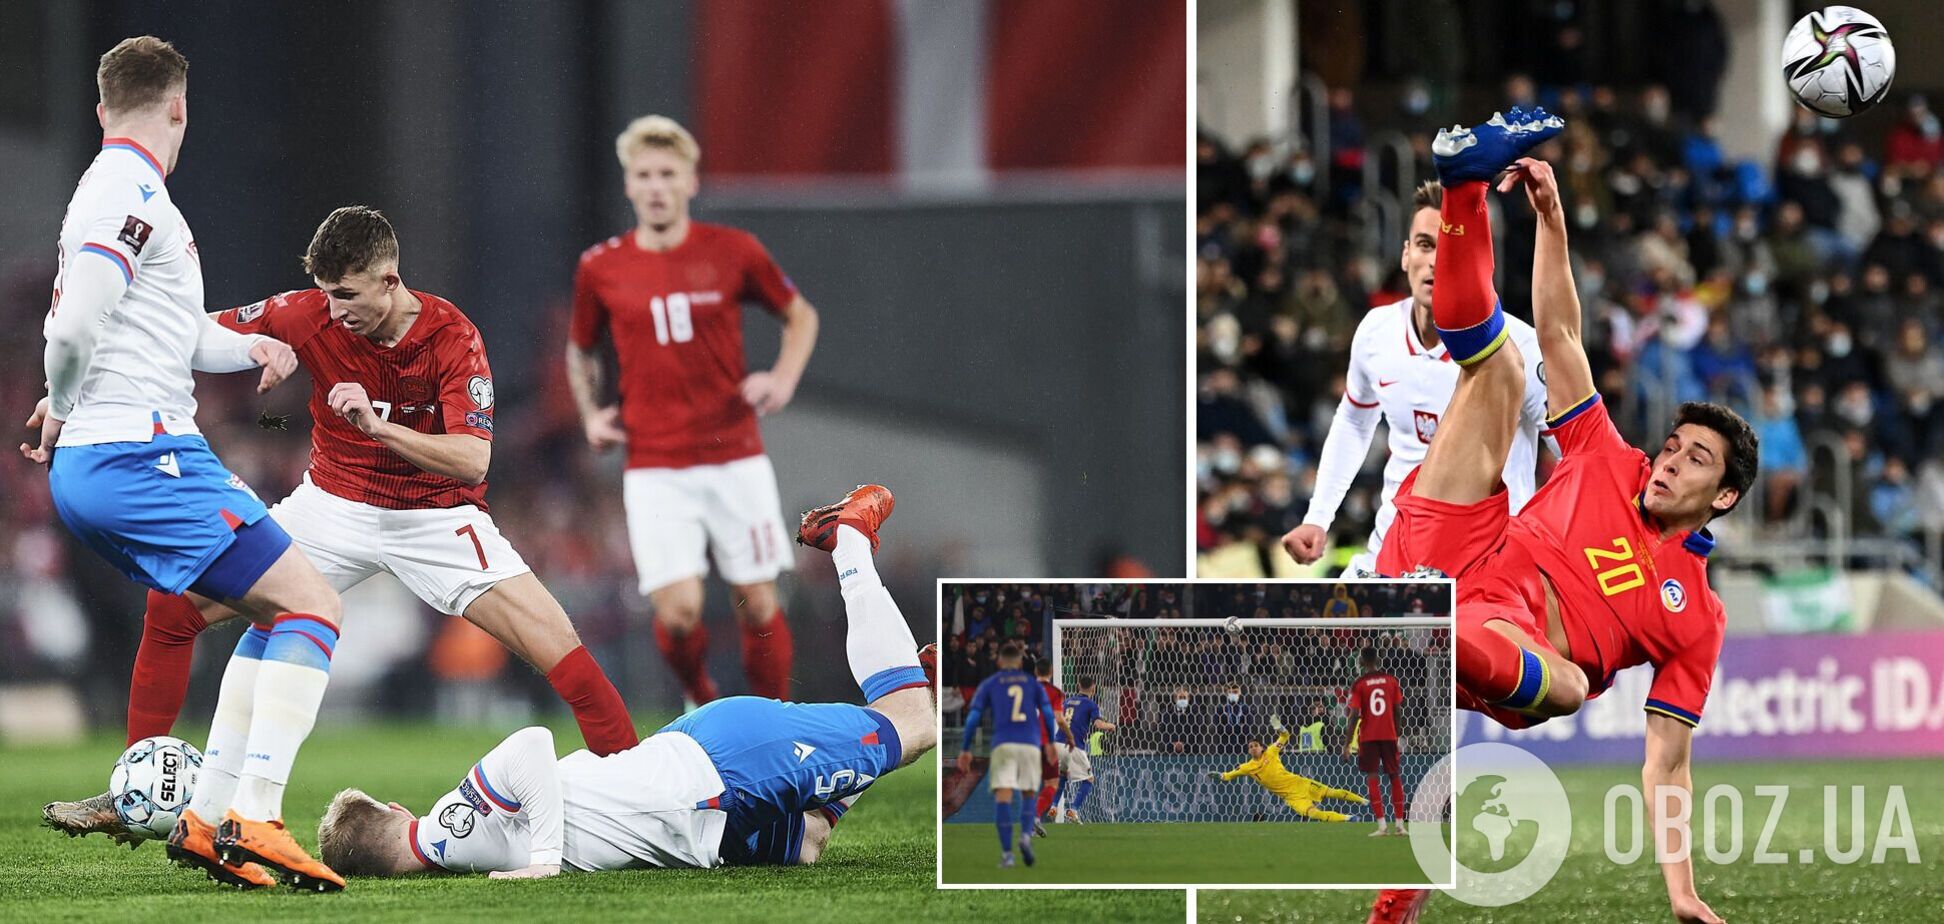 Нічия Італії, Данія вперше пропустила у дев'ятому матчі: результати відбору ЧС-2022 12 листопада